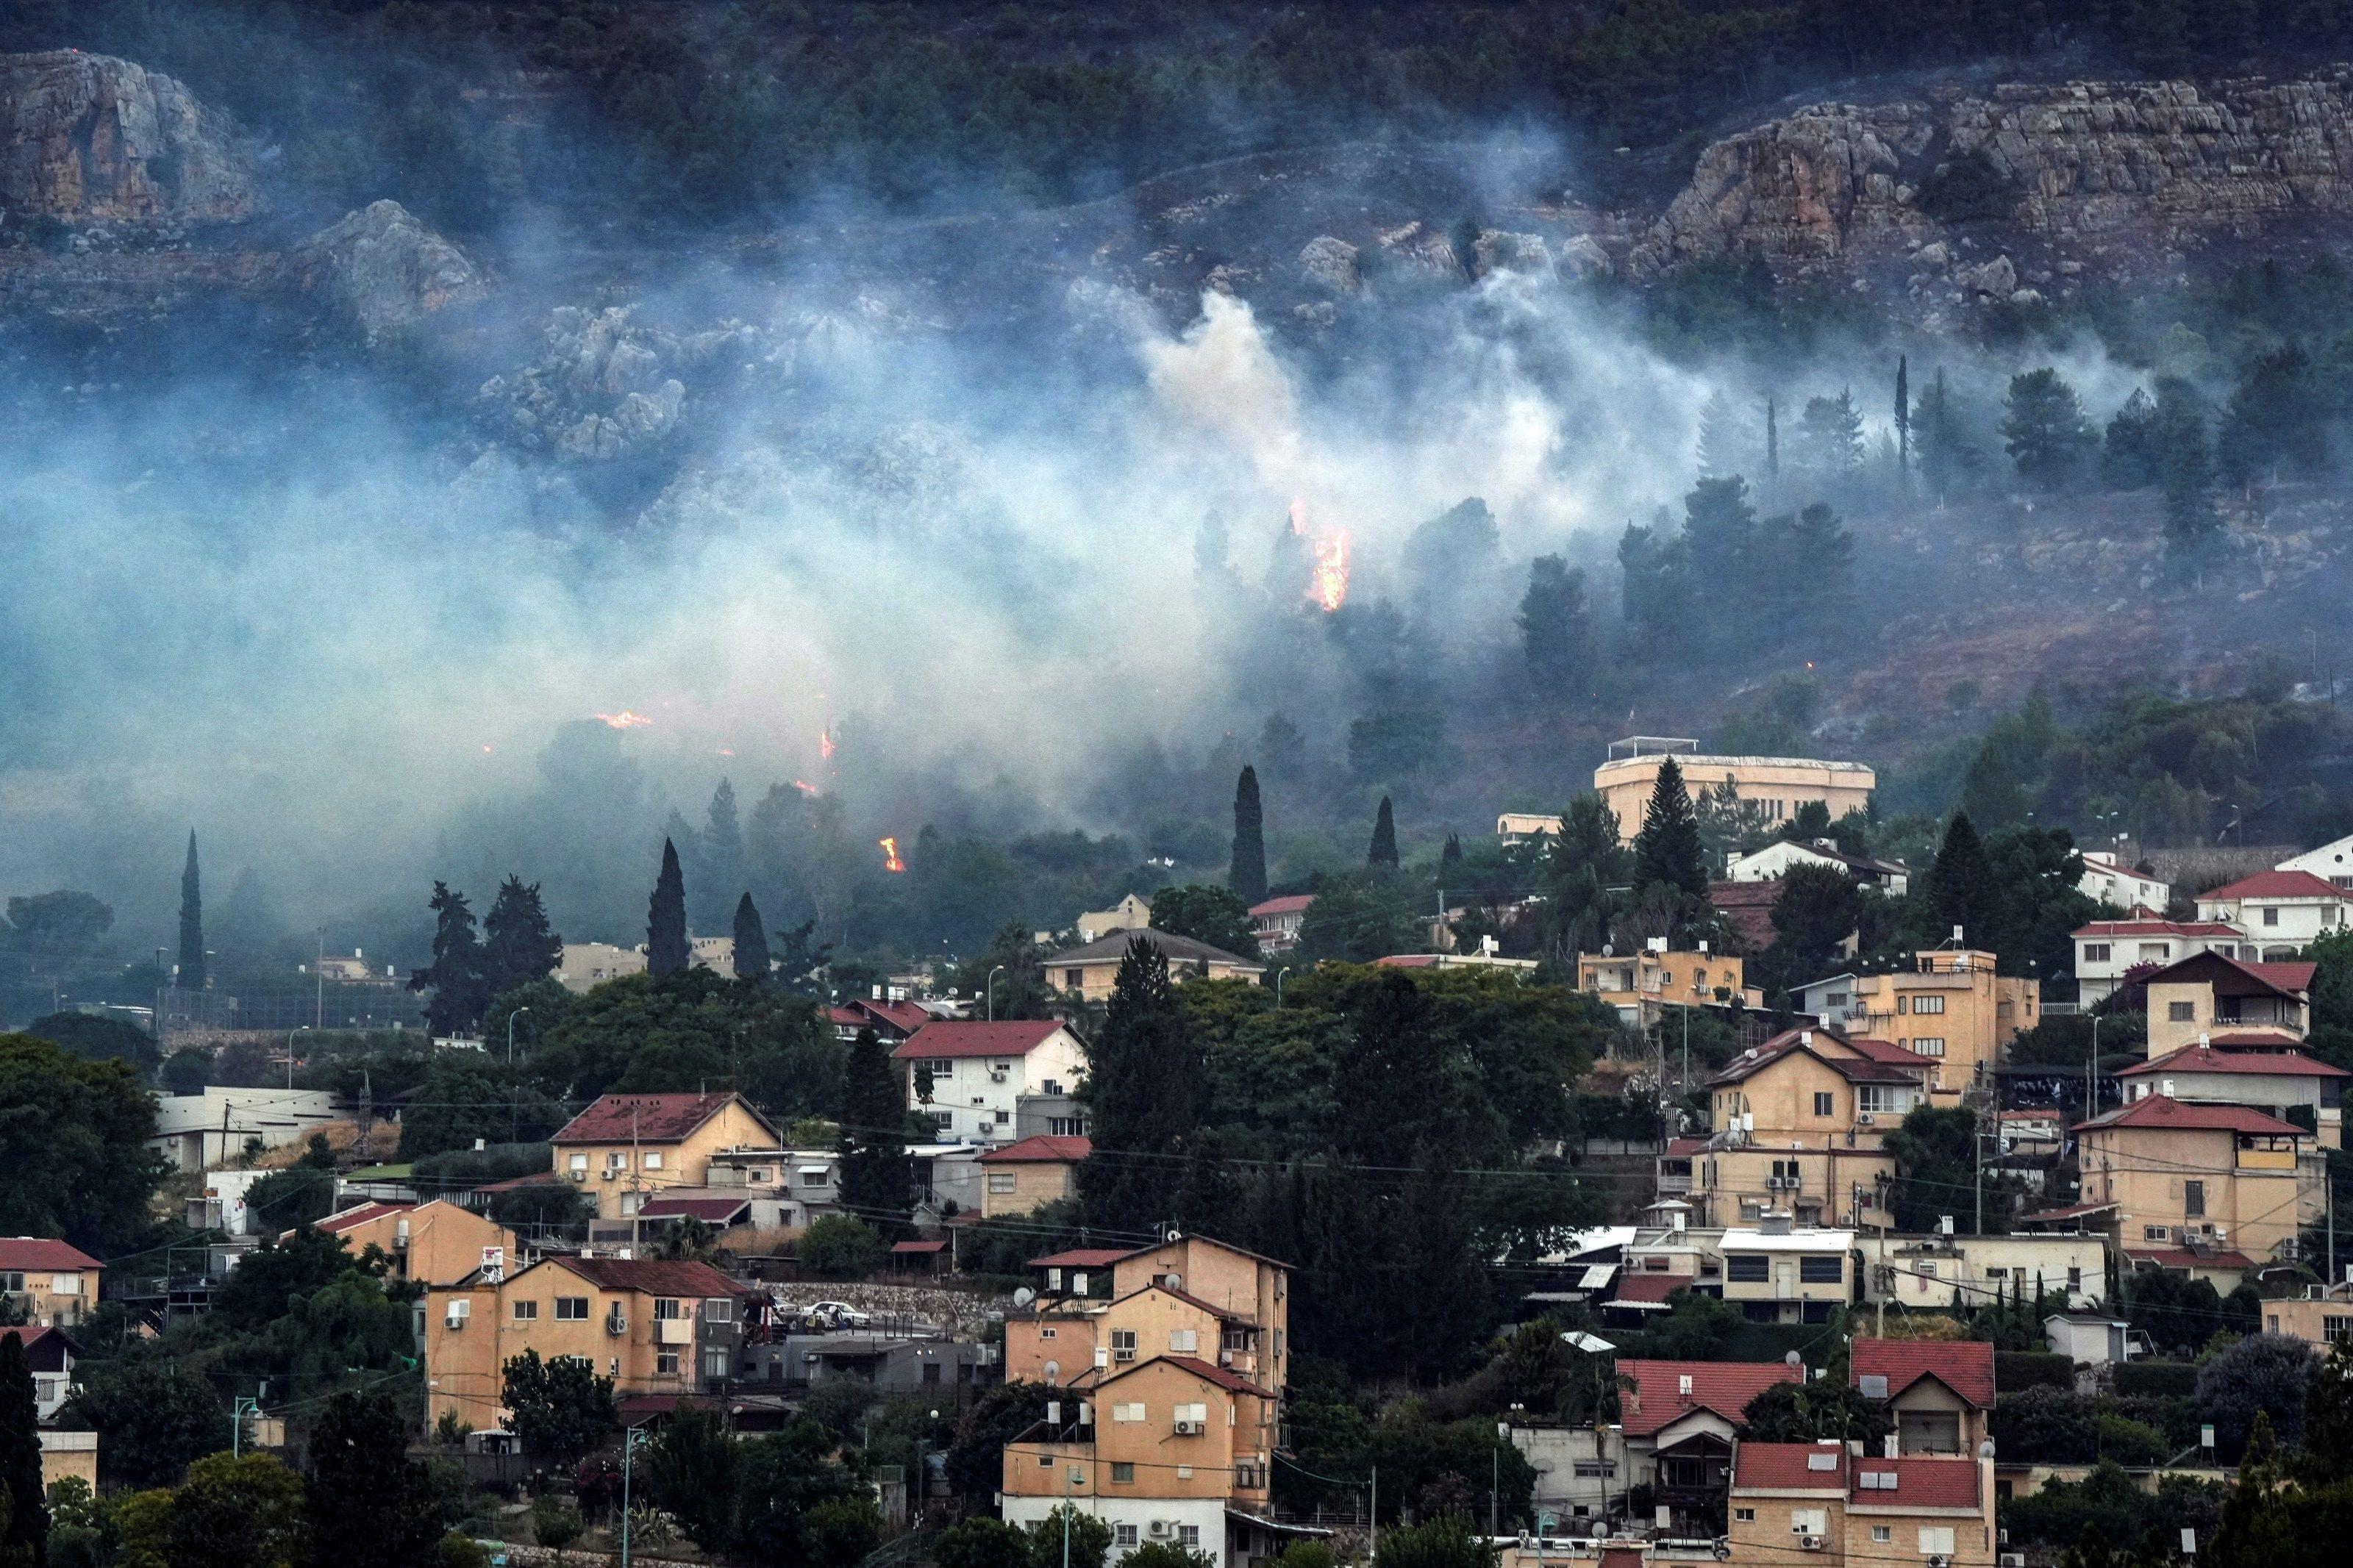 الدخان والنار يغطيان المنطقة في أعقاب الهجمات الصاروخية من لبنان